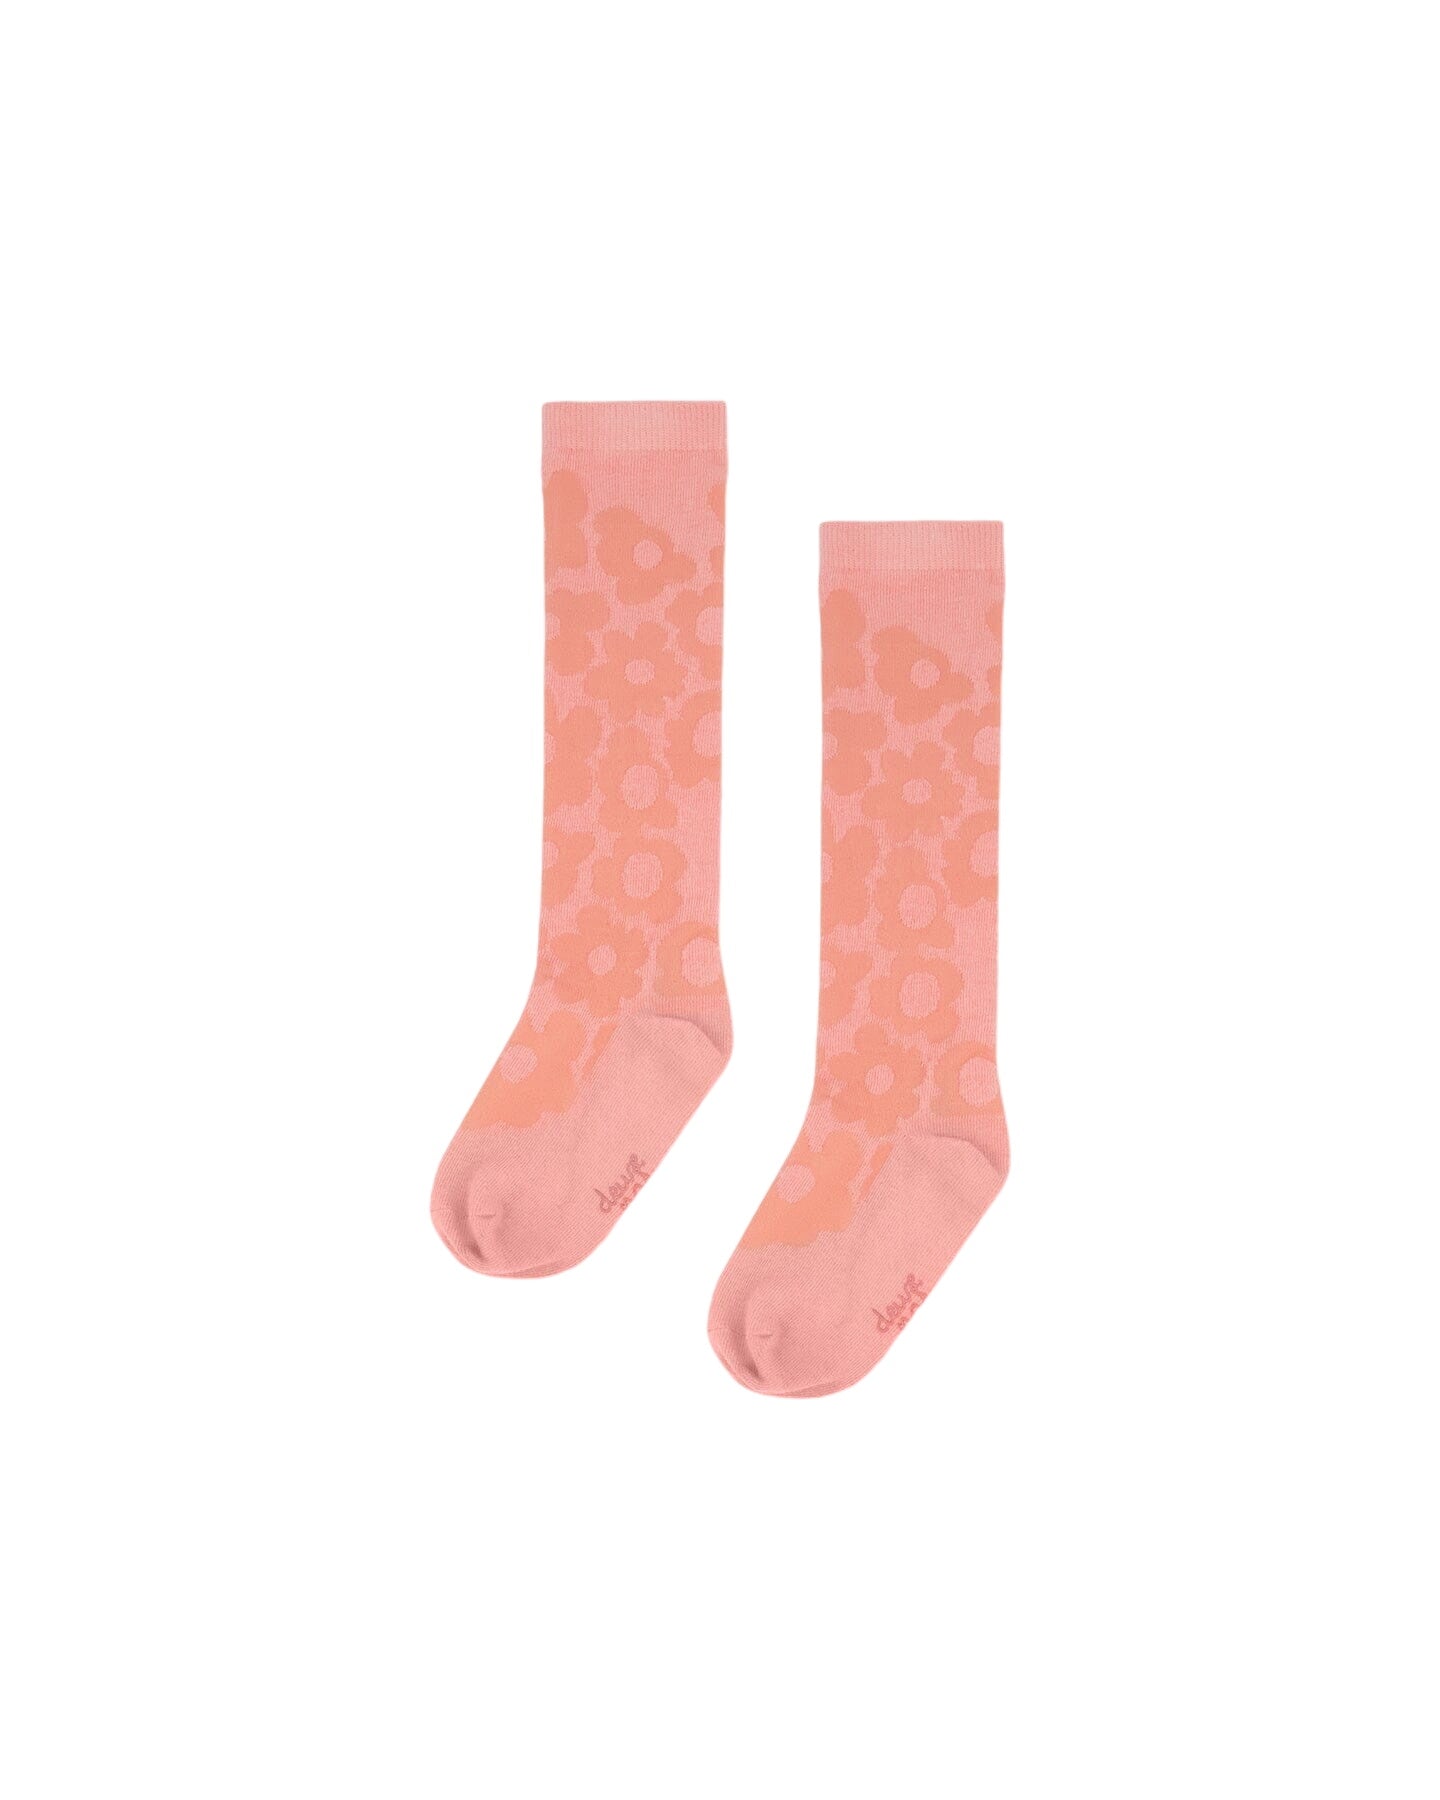 Jacquard Socks Misty Pink